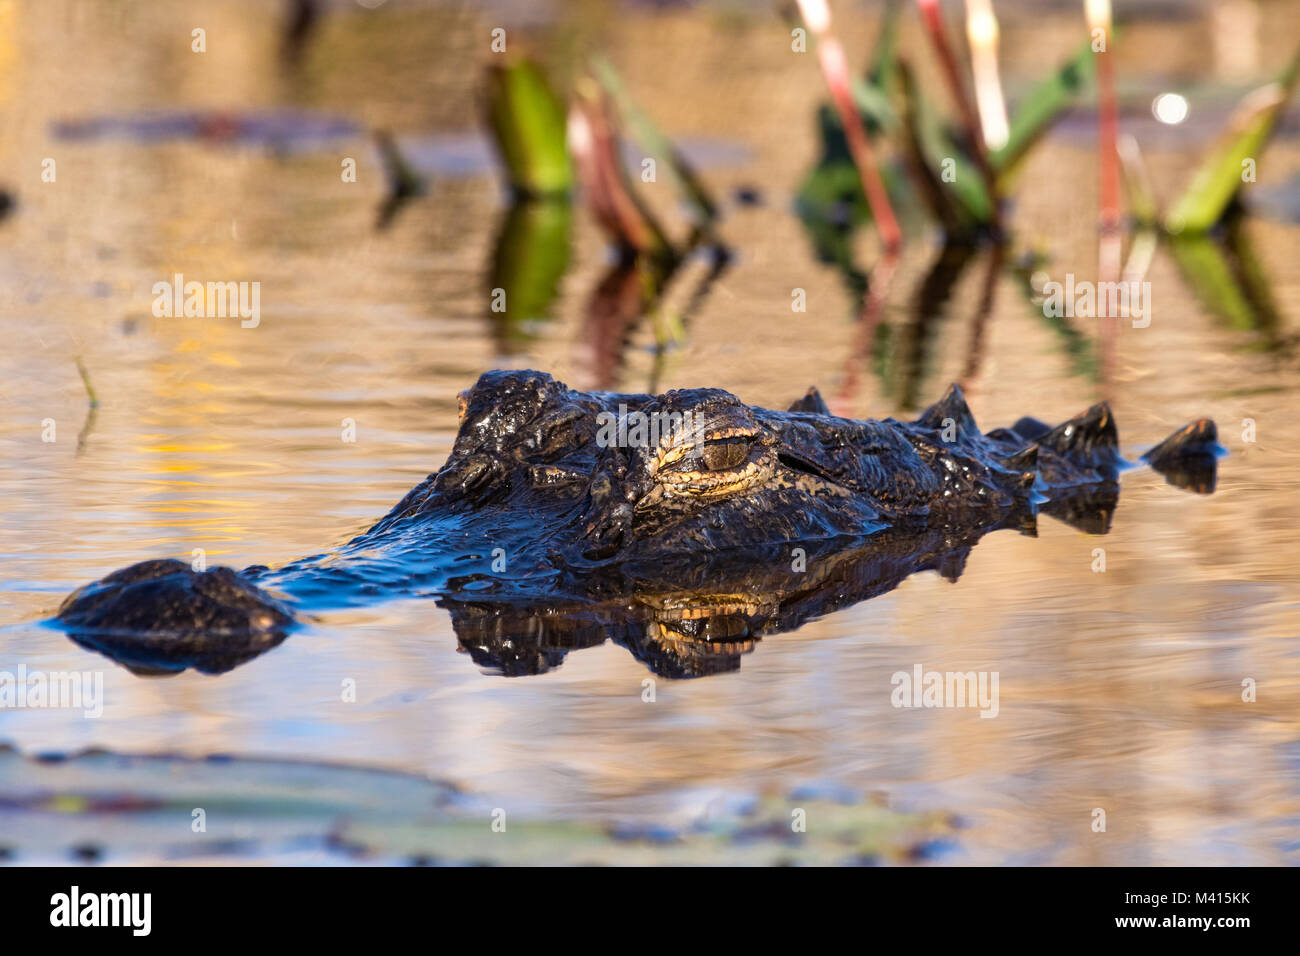 Un cocodrilo americano (Alligator mississippiensis) sentar bajo en el pantano. Foto de stock